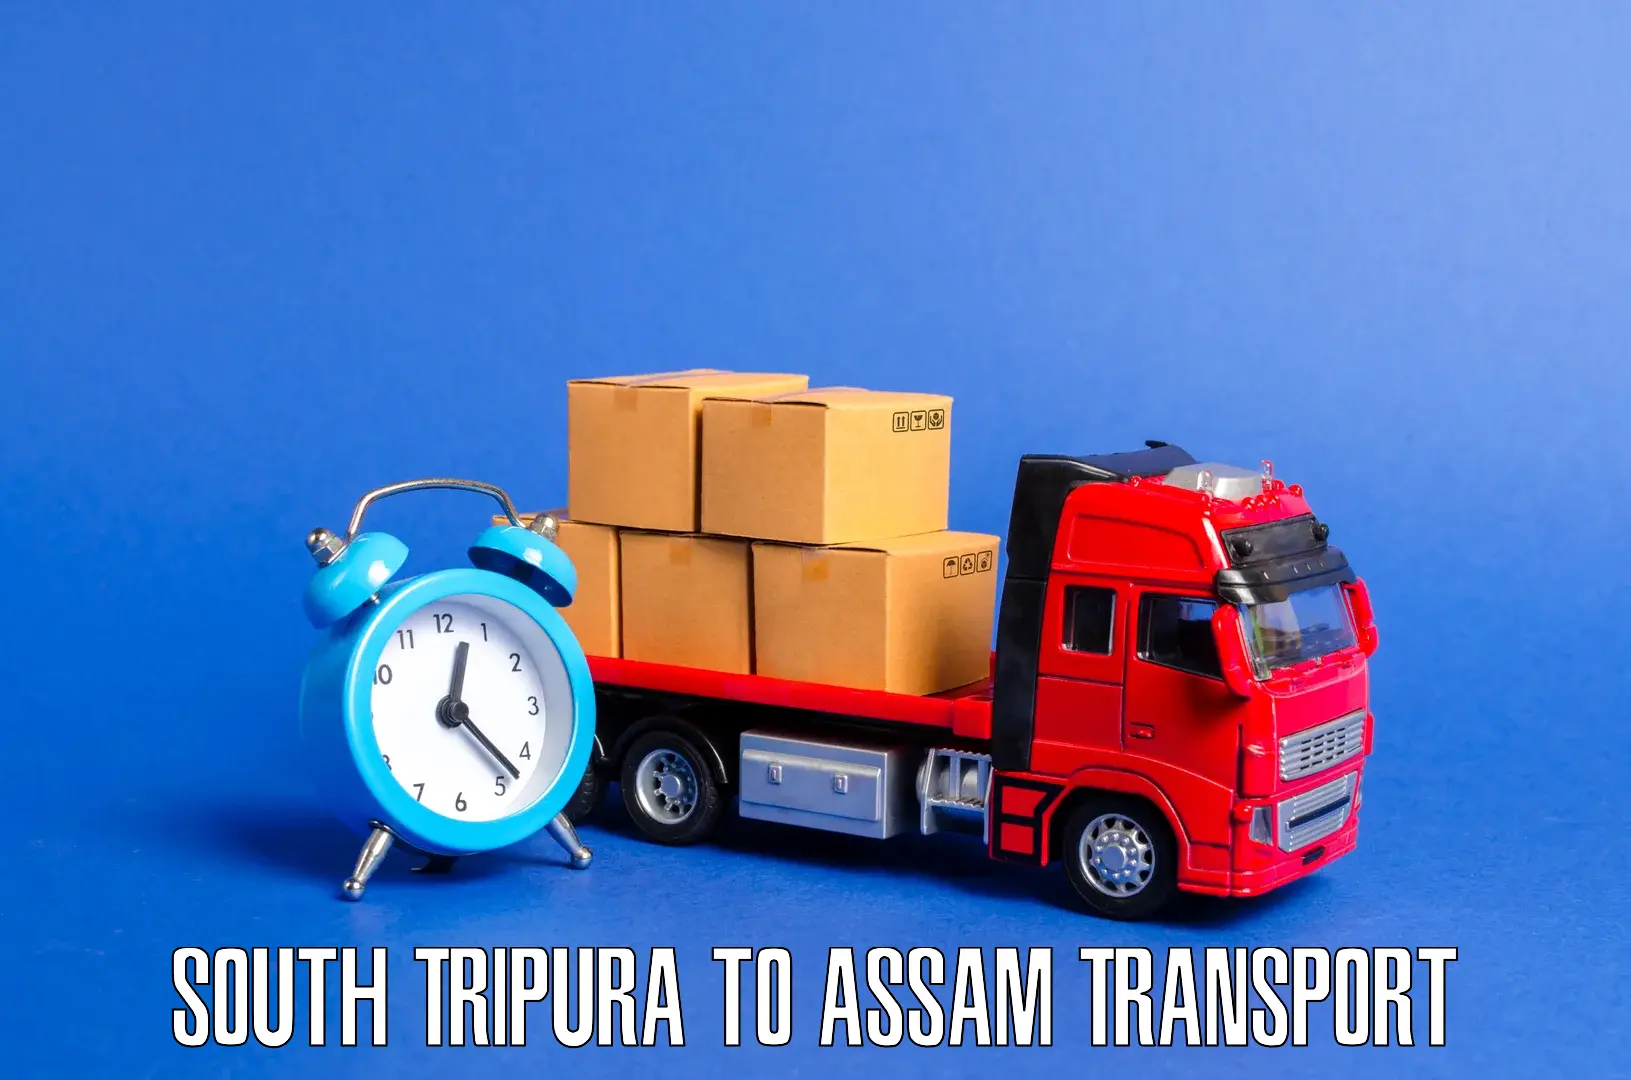 Commercial transport service South Tripura to Puranigudam